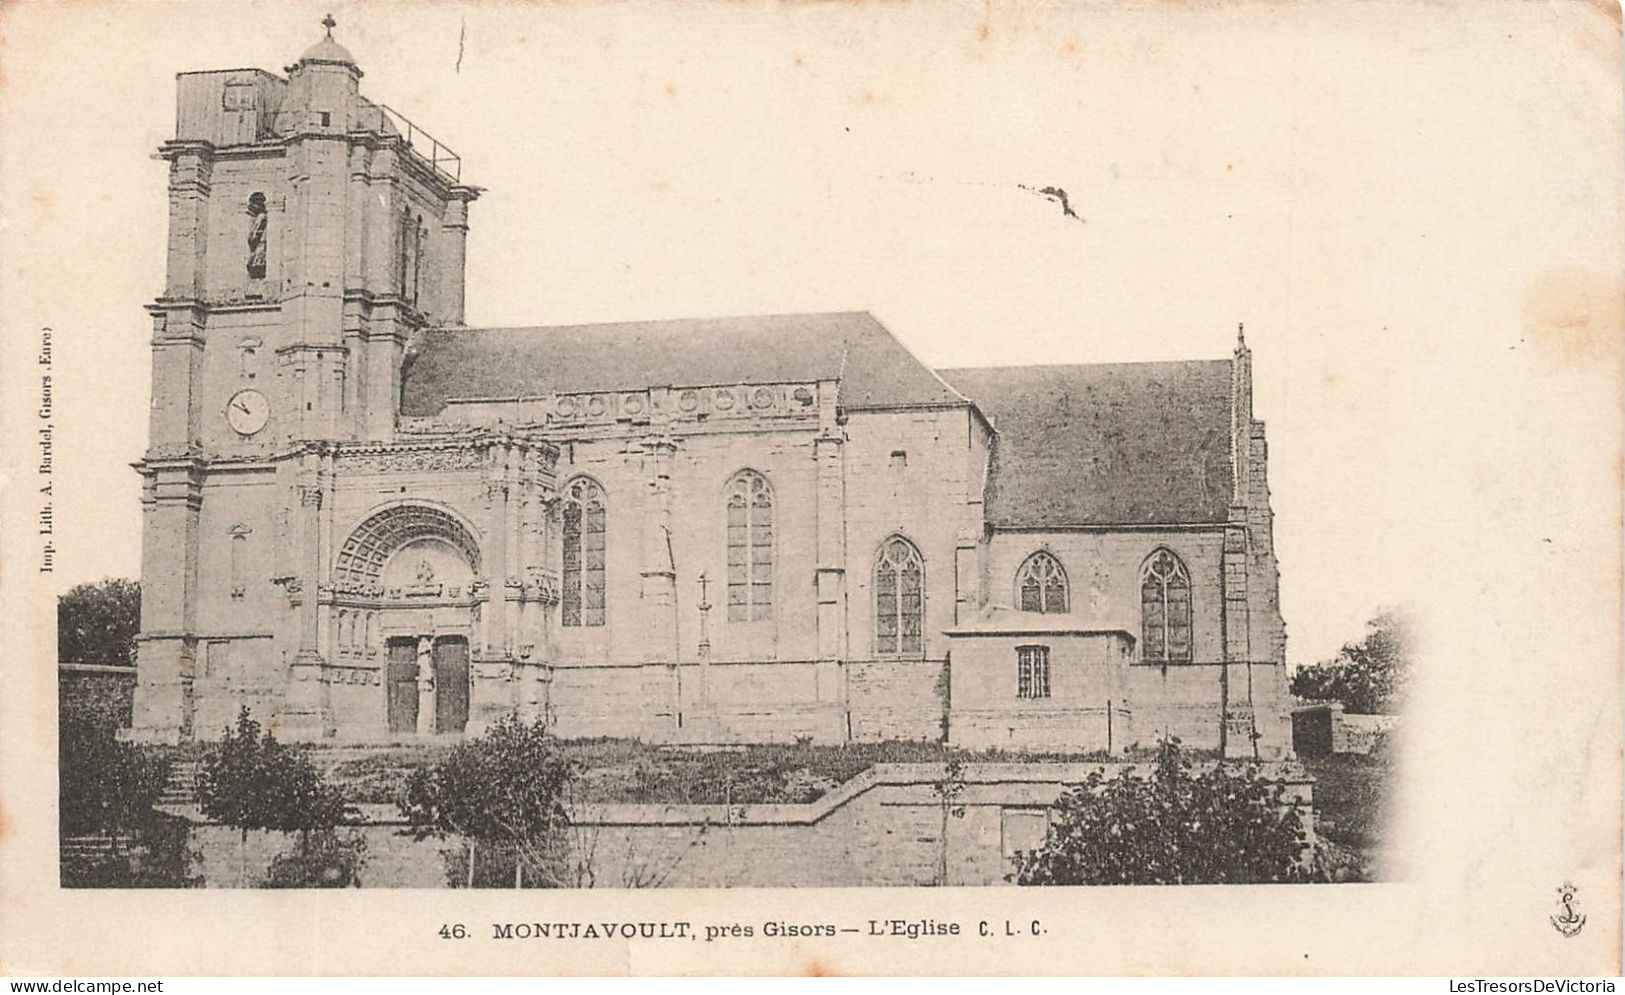 FRANCE - Brest - Hôpital Maritime - Carte Postale Ancienne - Brest